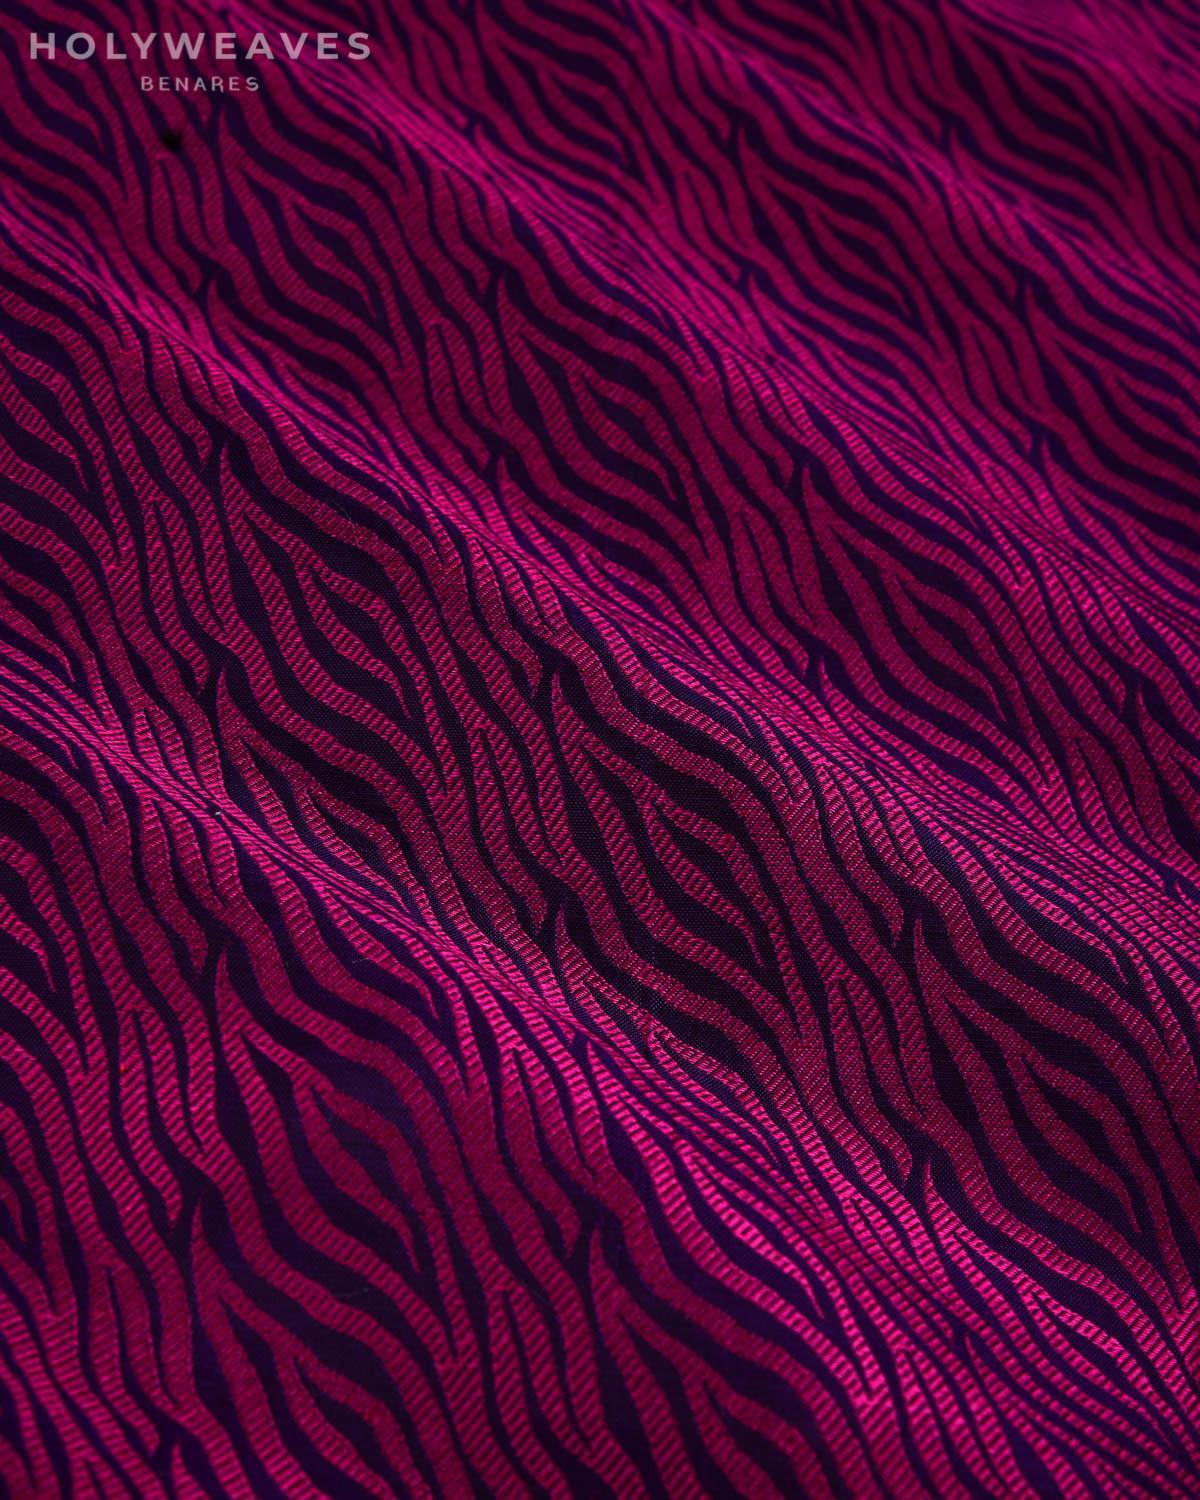 Magenta on Purple Banarasi Animal Stripes Resham Tanchoi Handwoven Katan Silk Fabric - By HolyWeaves, Benares